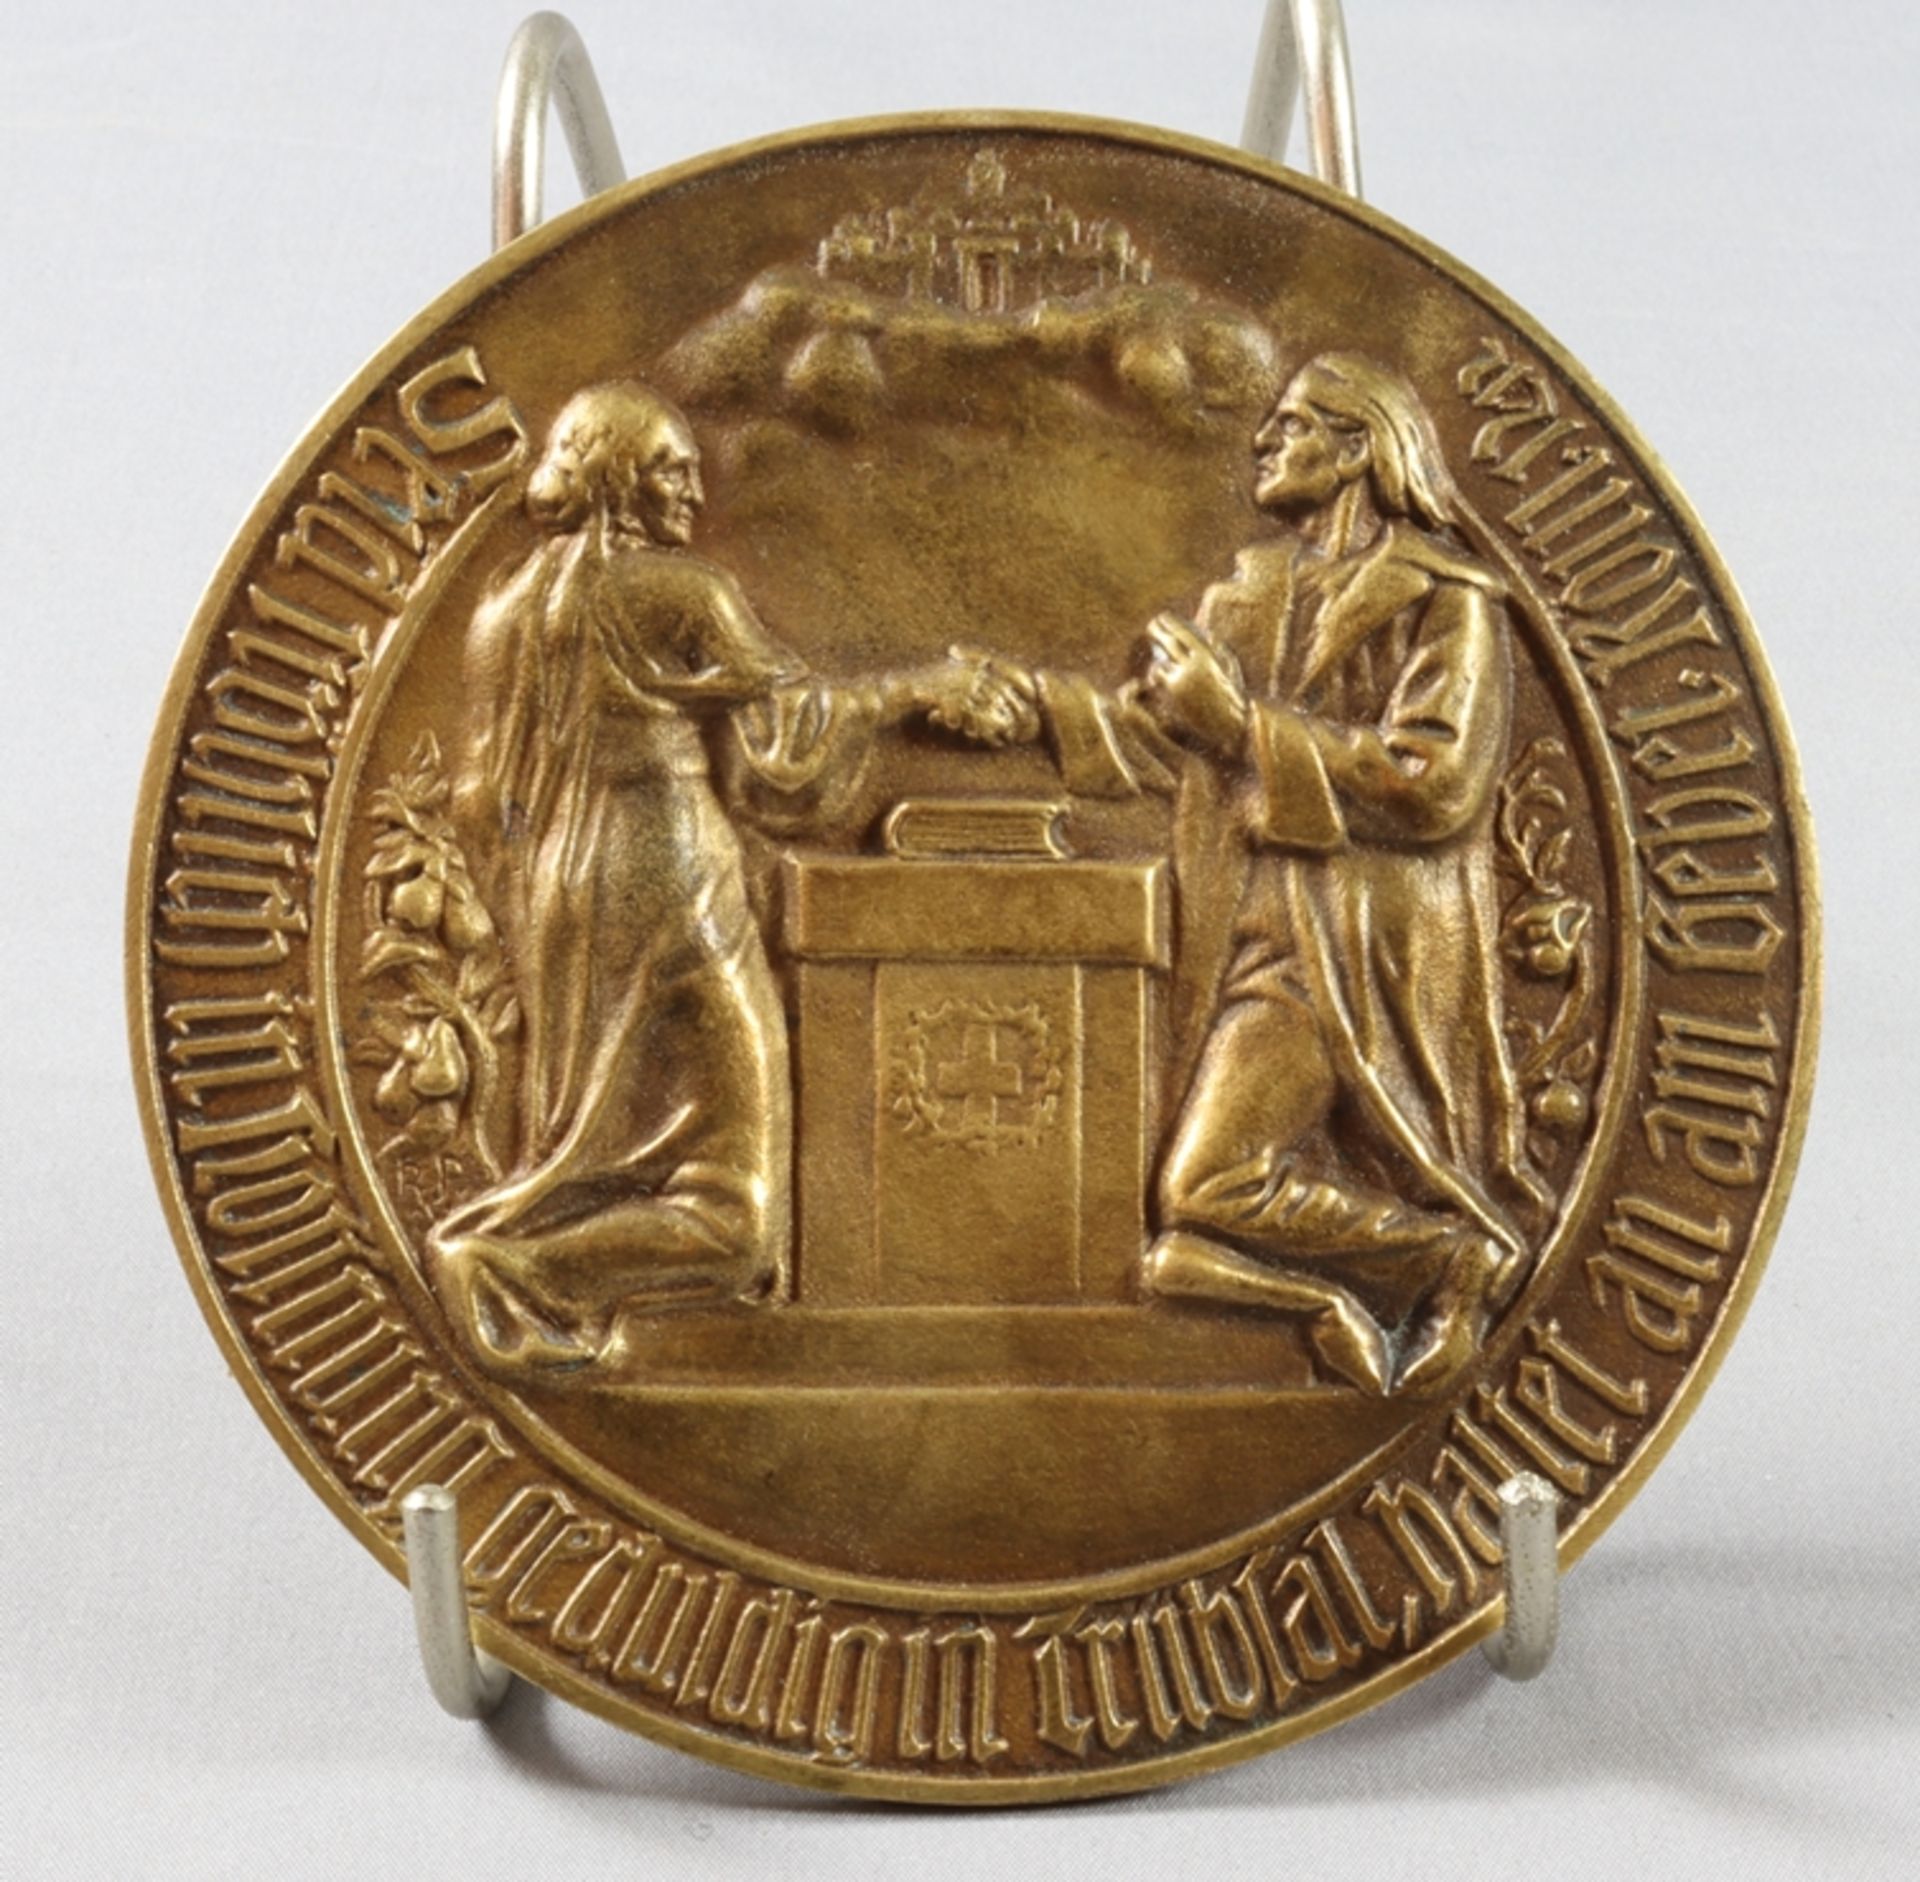 Medaille zur Goldenen Hochzeit 1920 - Image 2 of 3